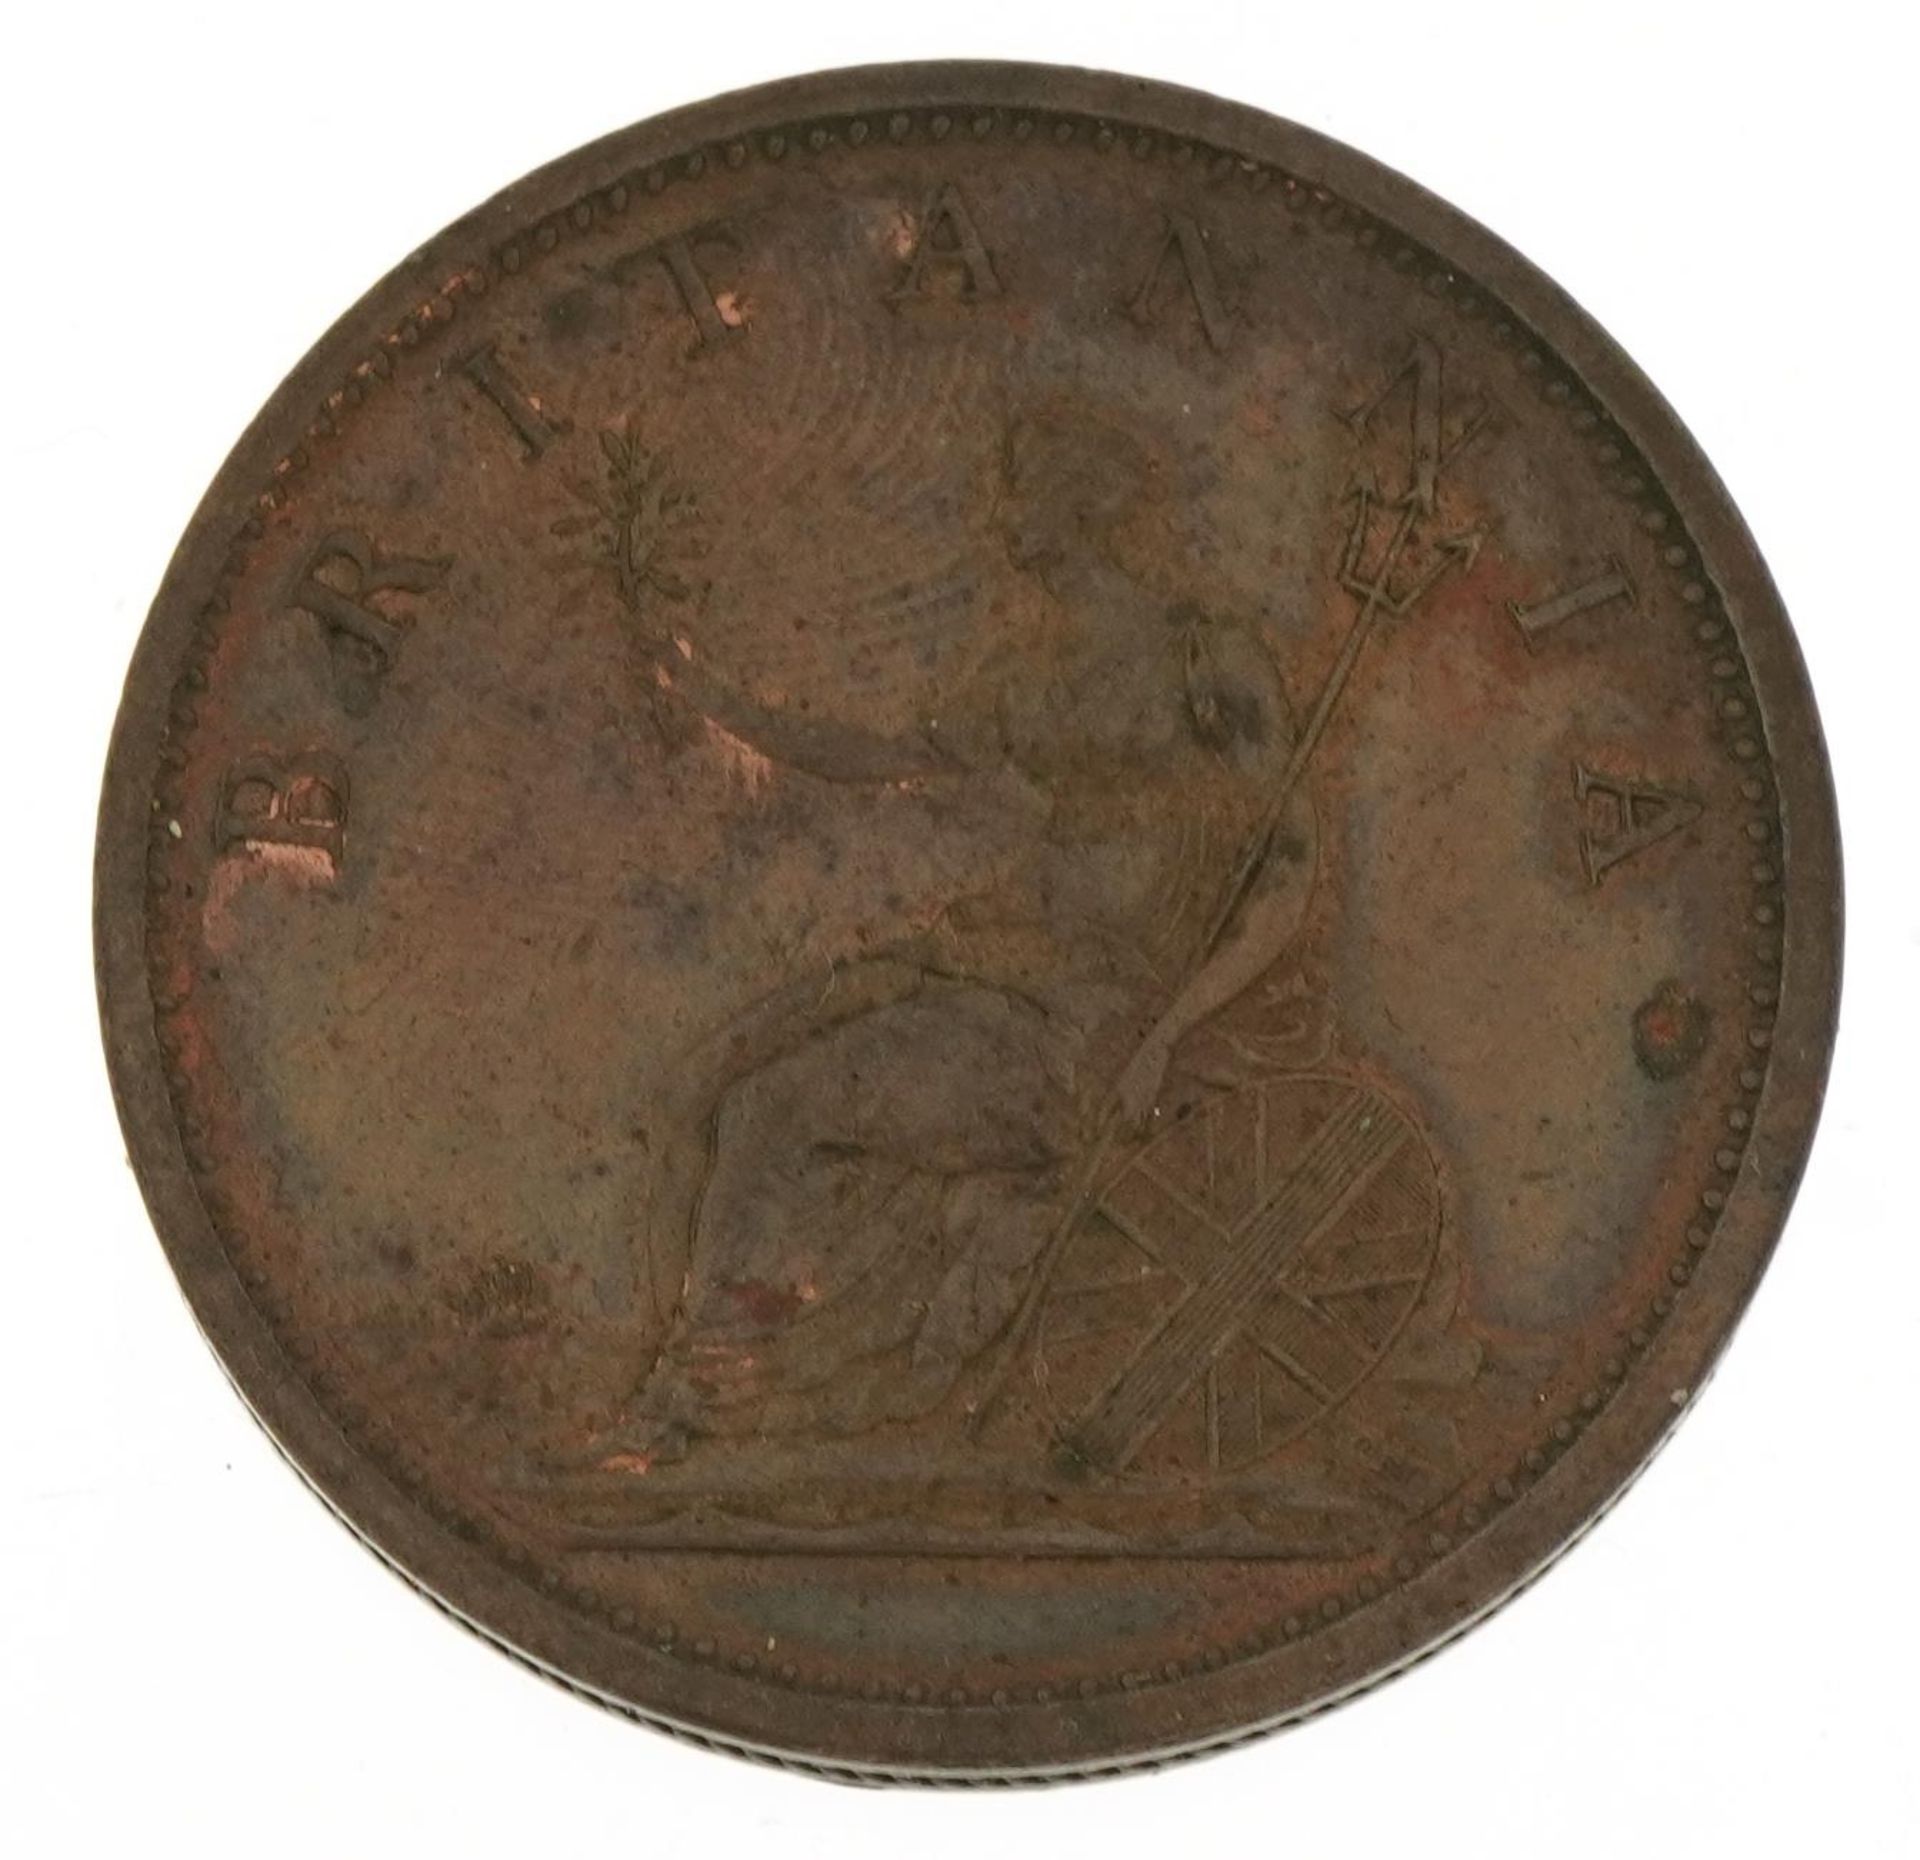 George III 1806 penny - Image 2 of 2